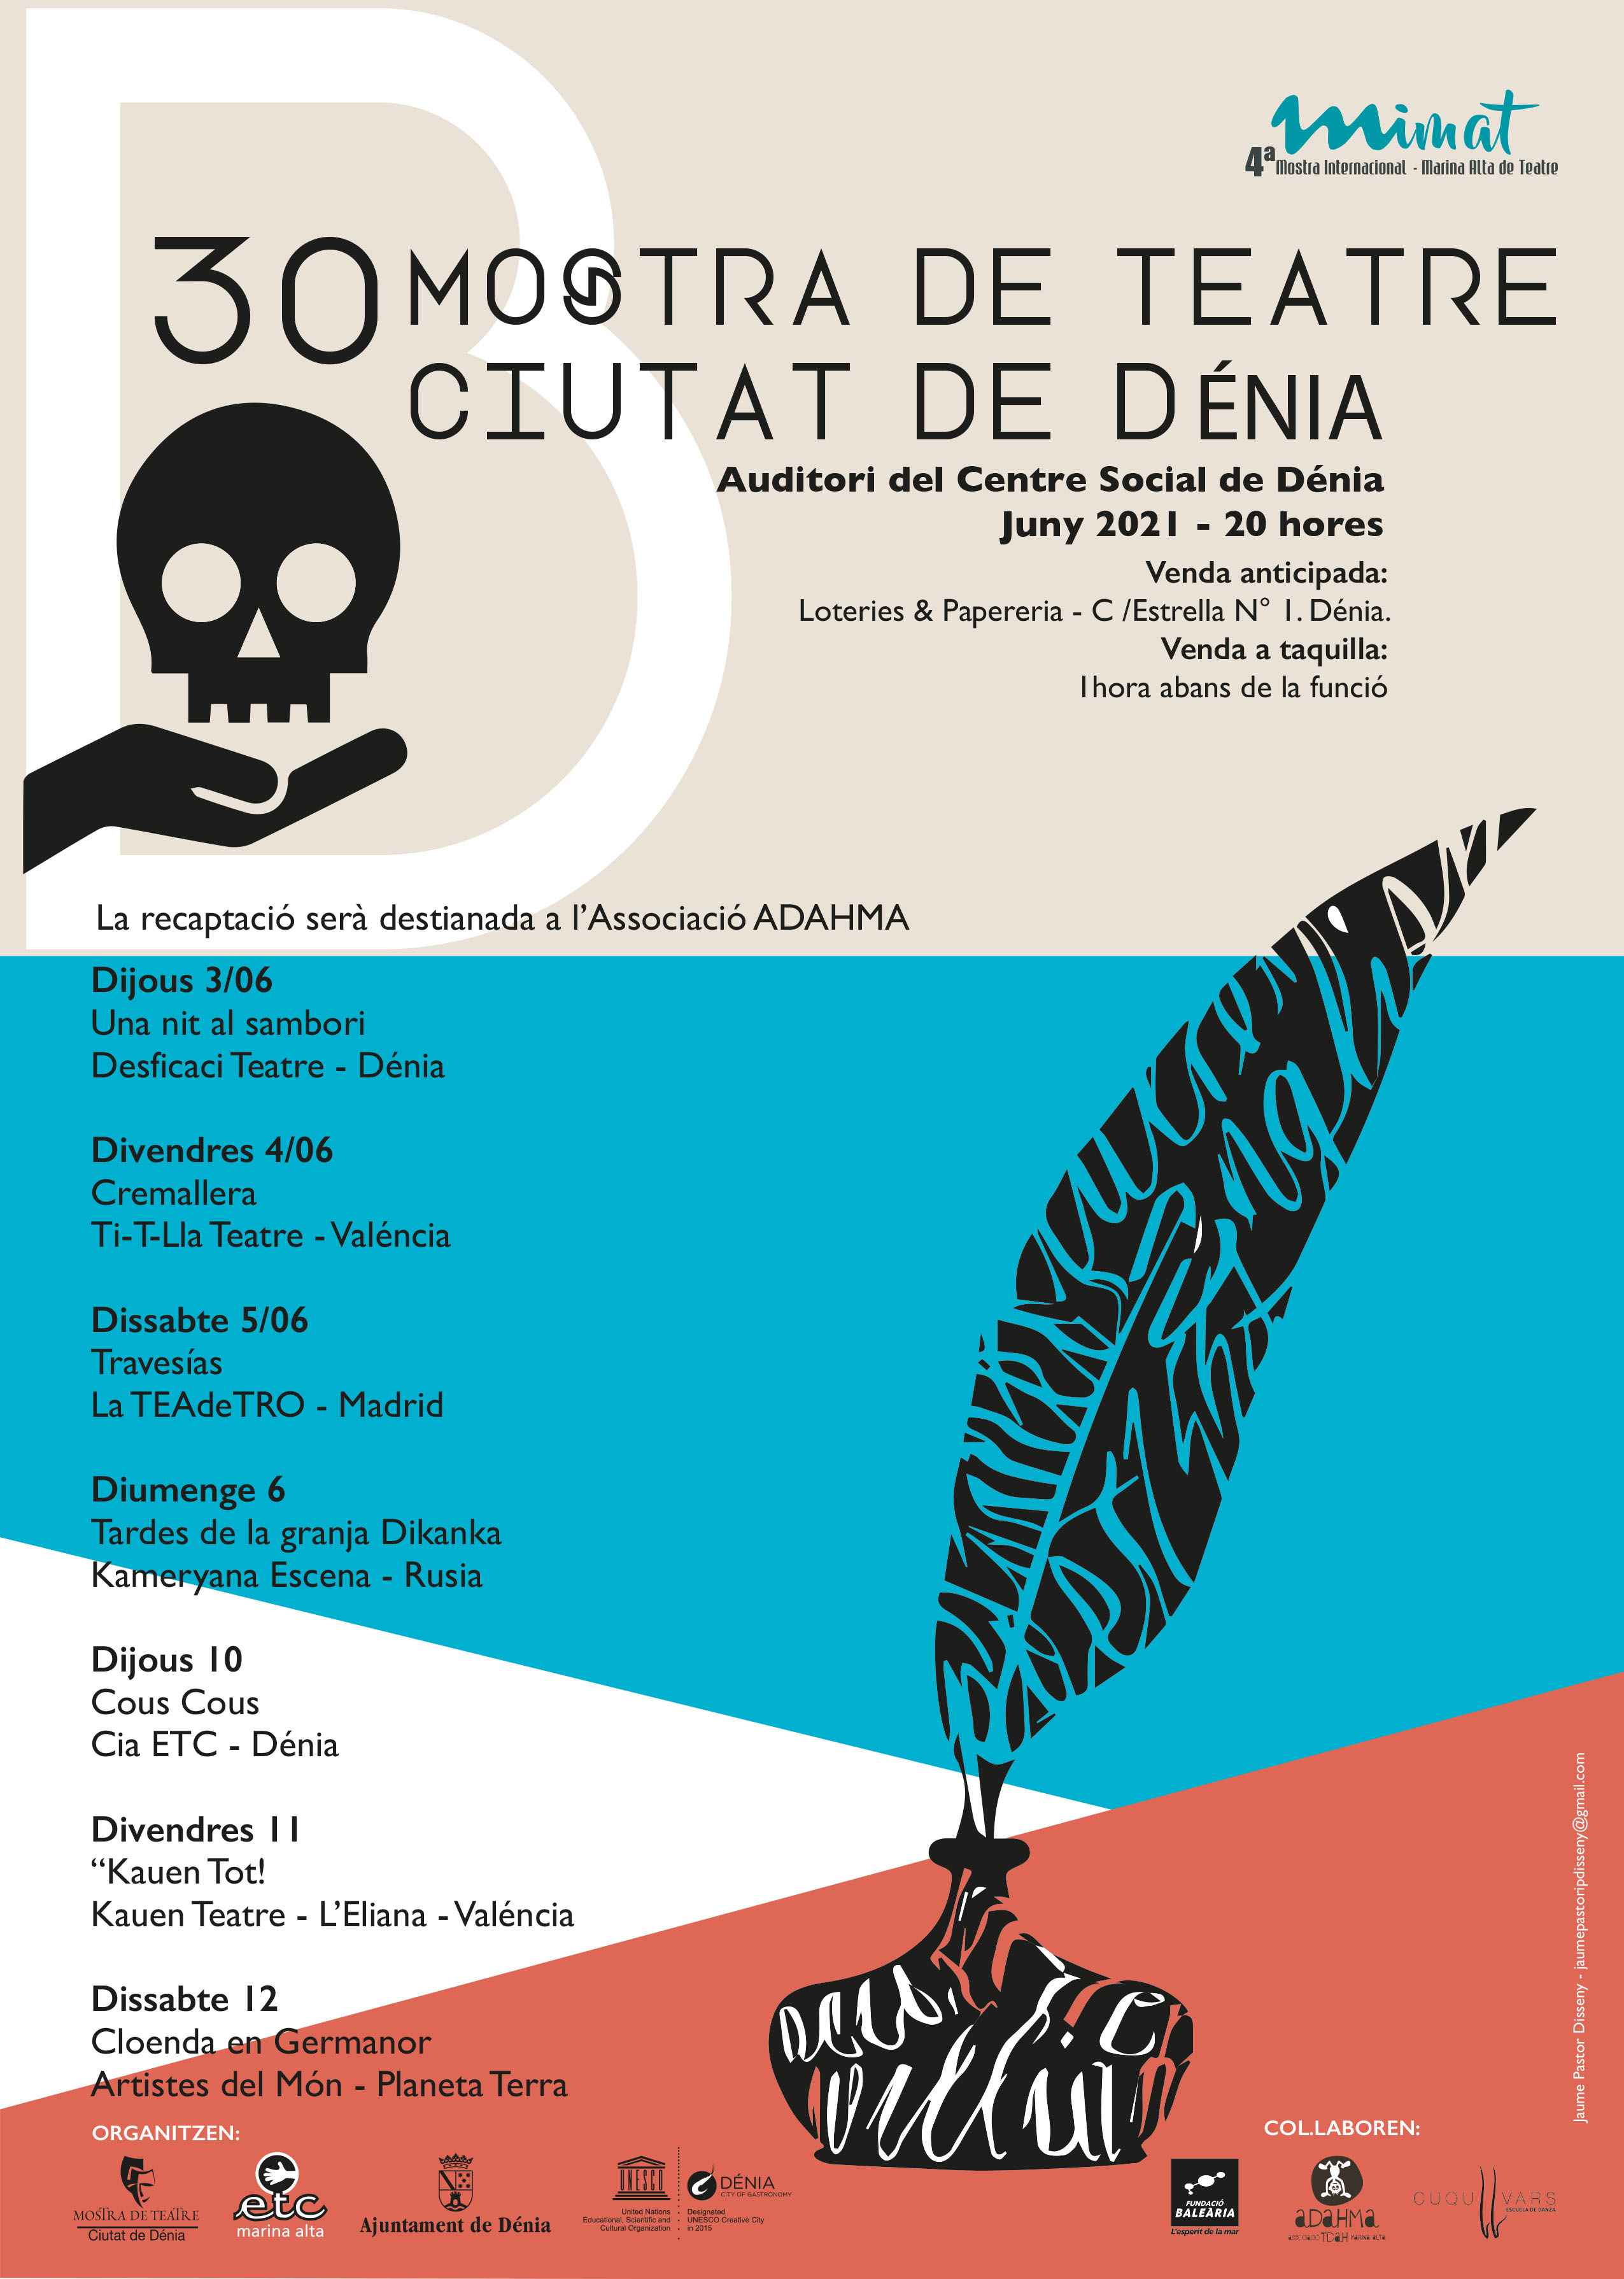 La Mostra de Teatre 'Ciutat de Dénia' recupera el formato anterior a la pandemia y c...